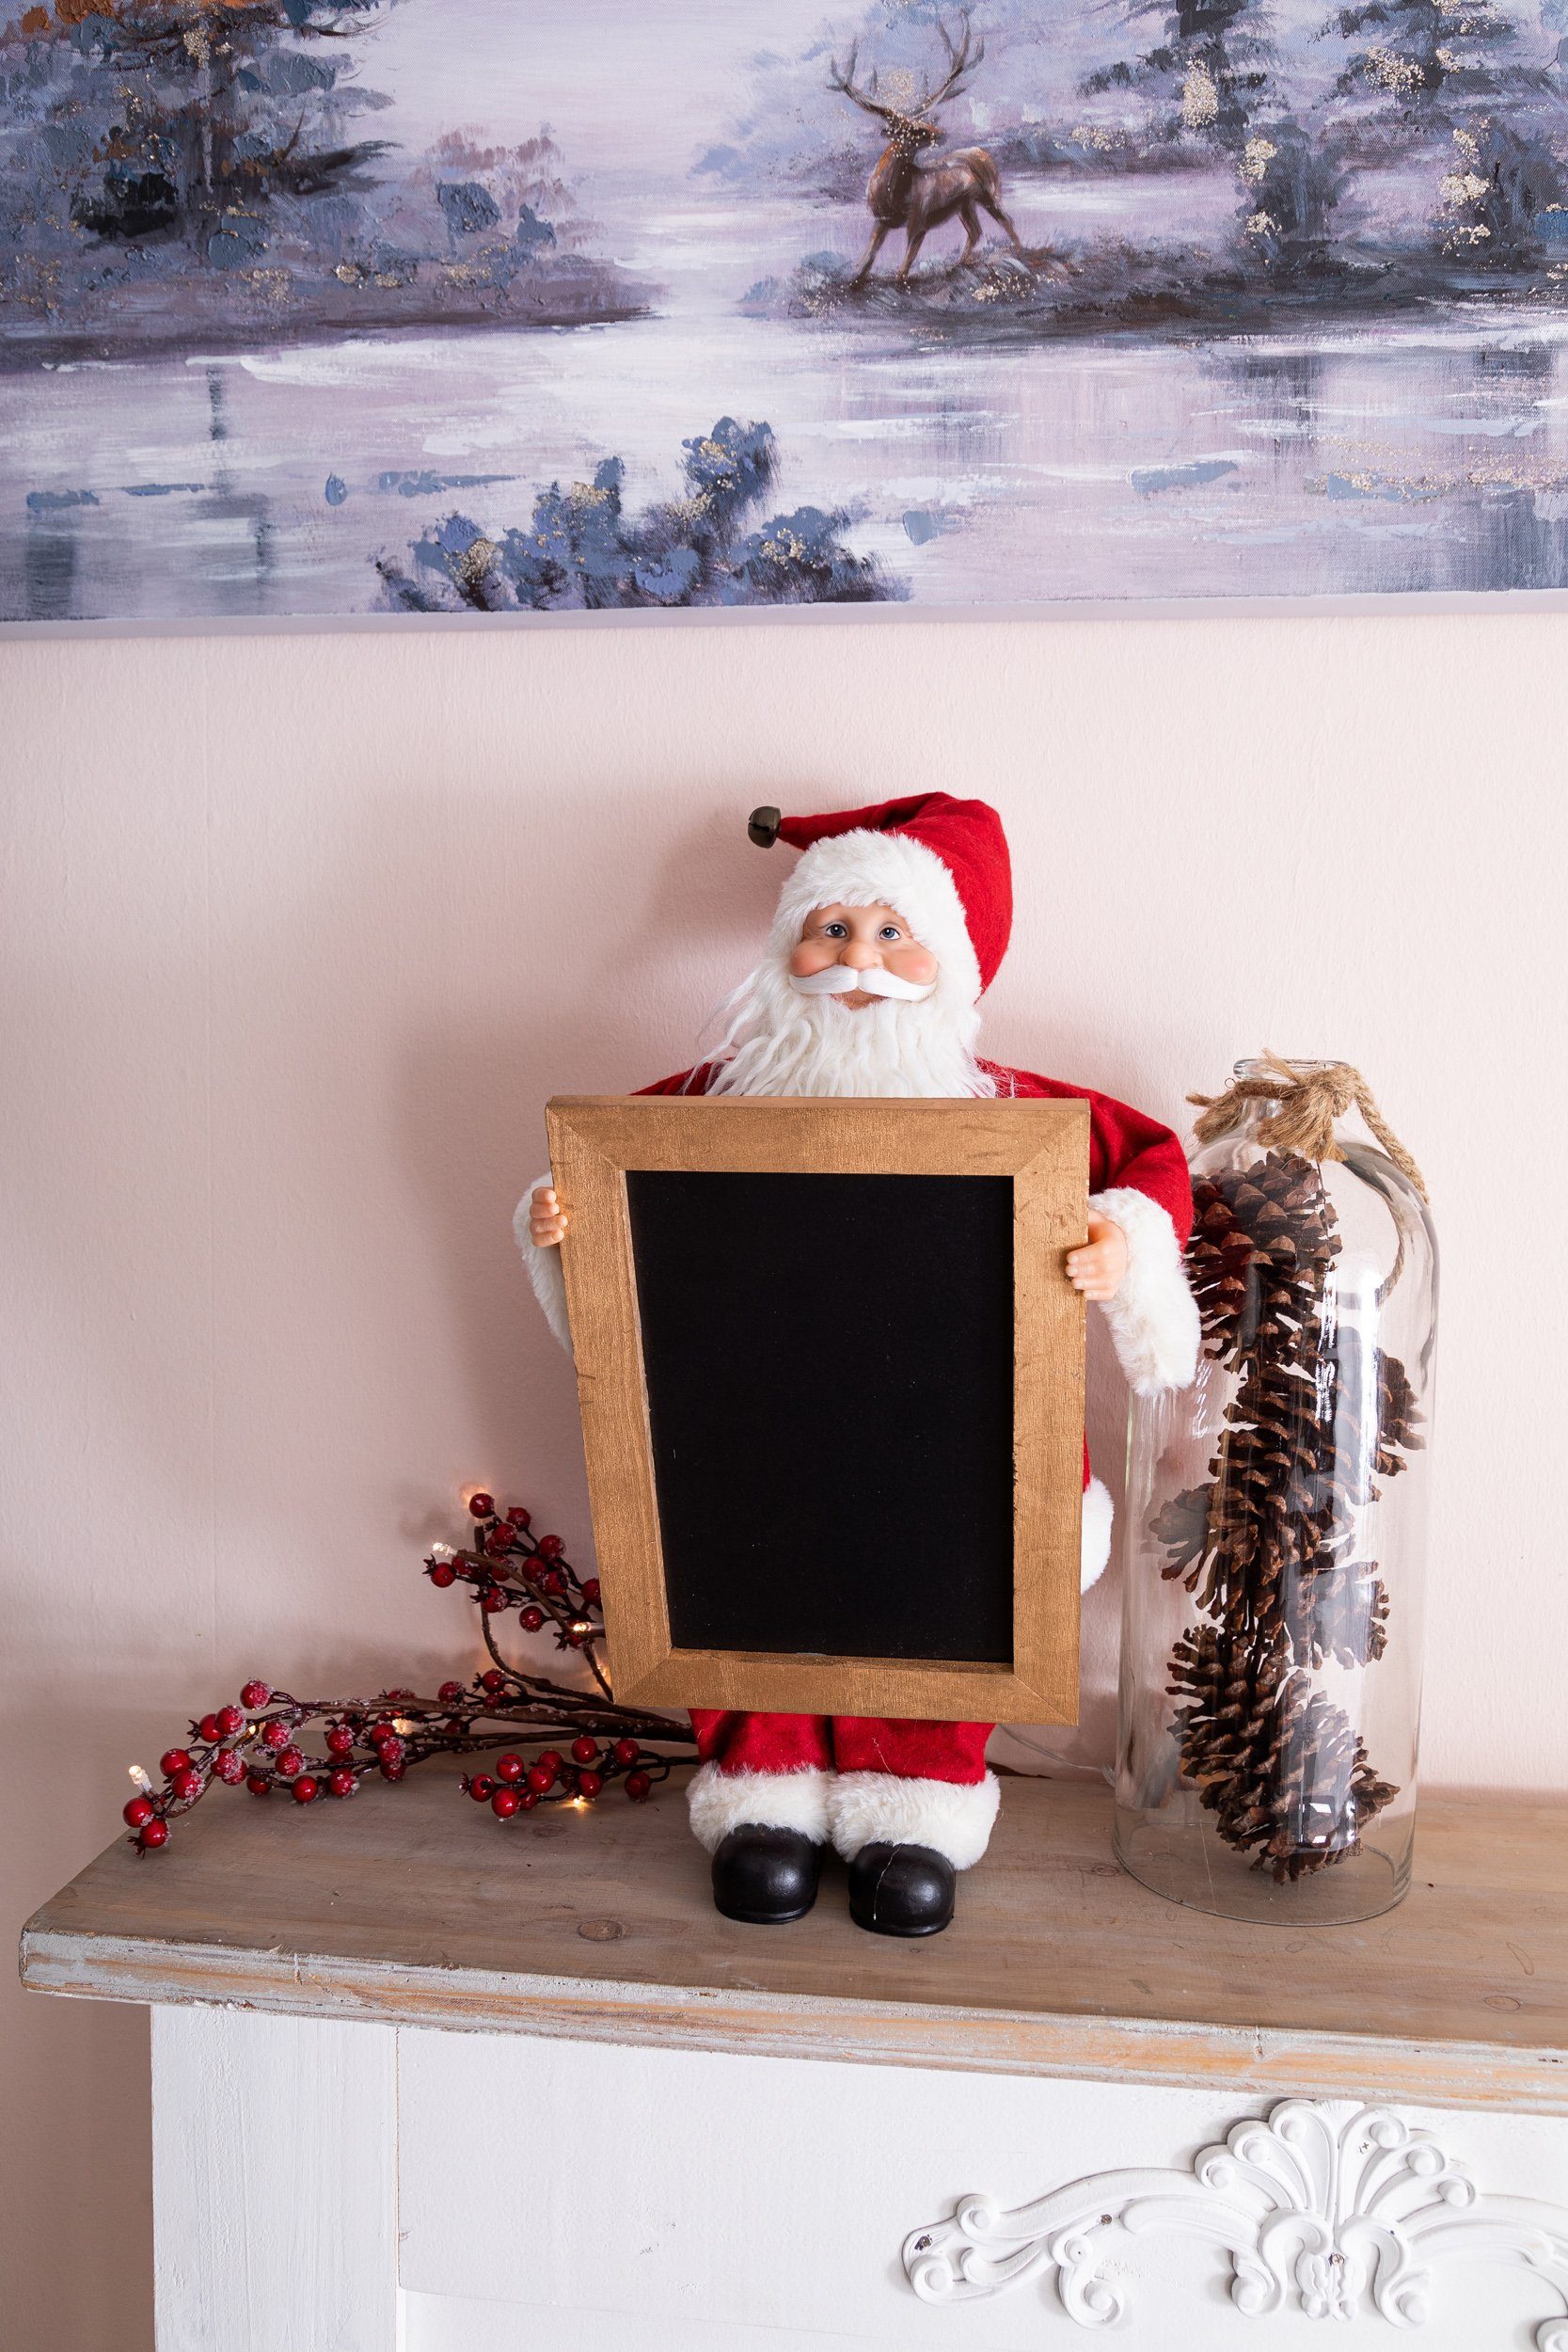 Wohnando Dekofigur Weihnachtsmann für zu Weihnachten, mit Gestalten Tafel Botschaft zum